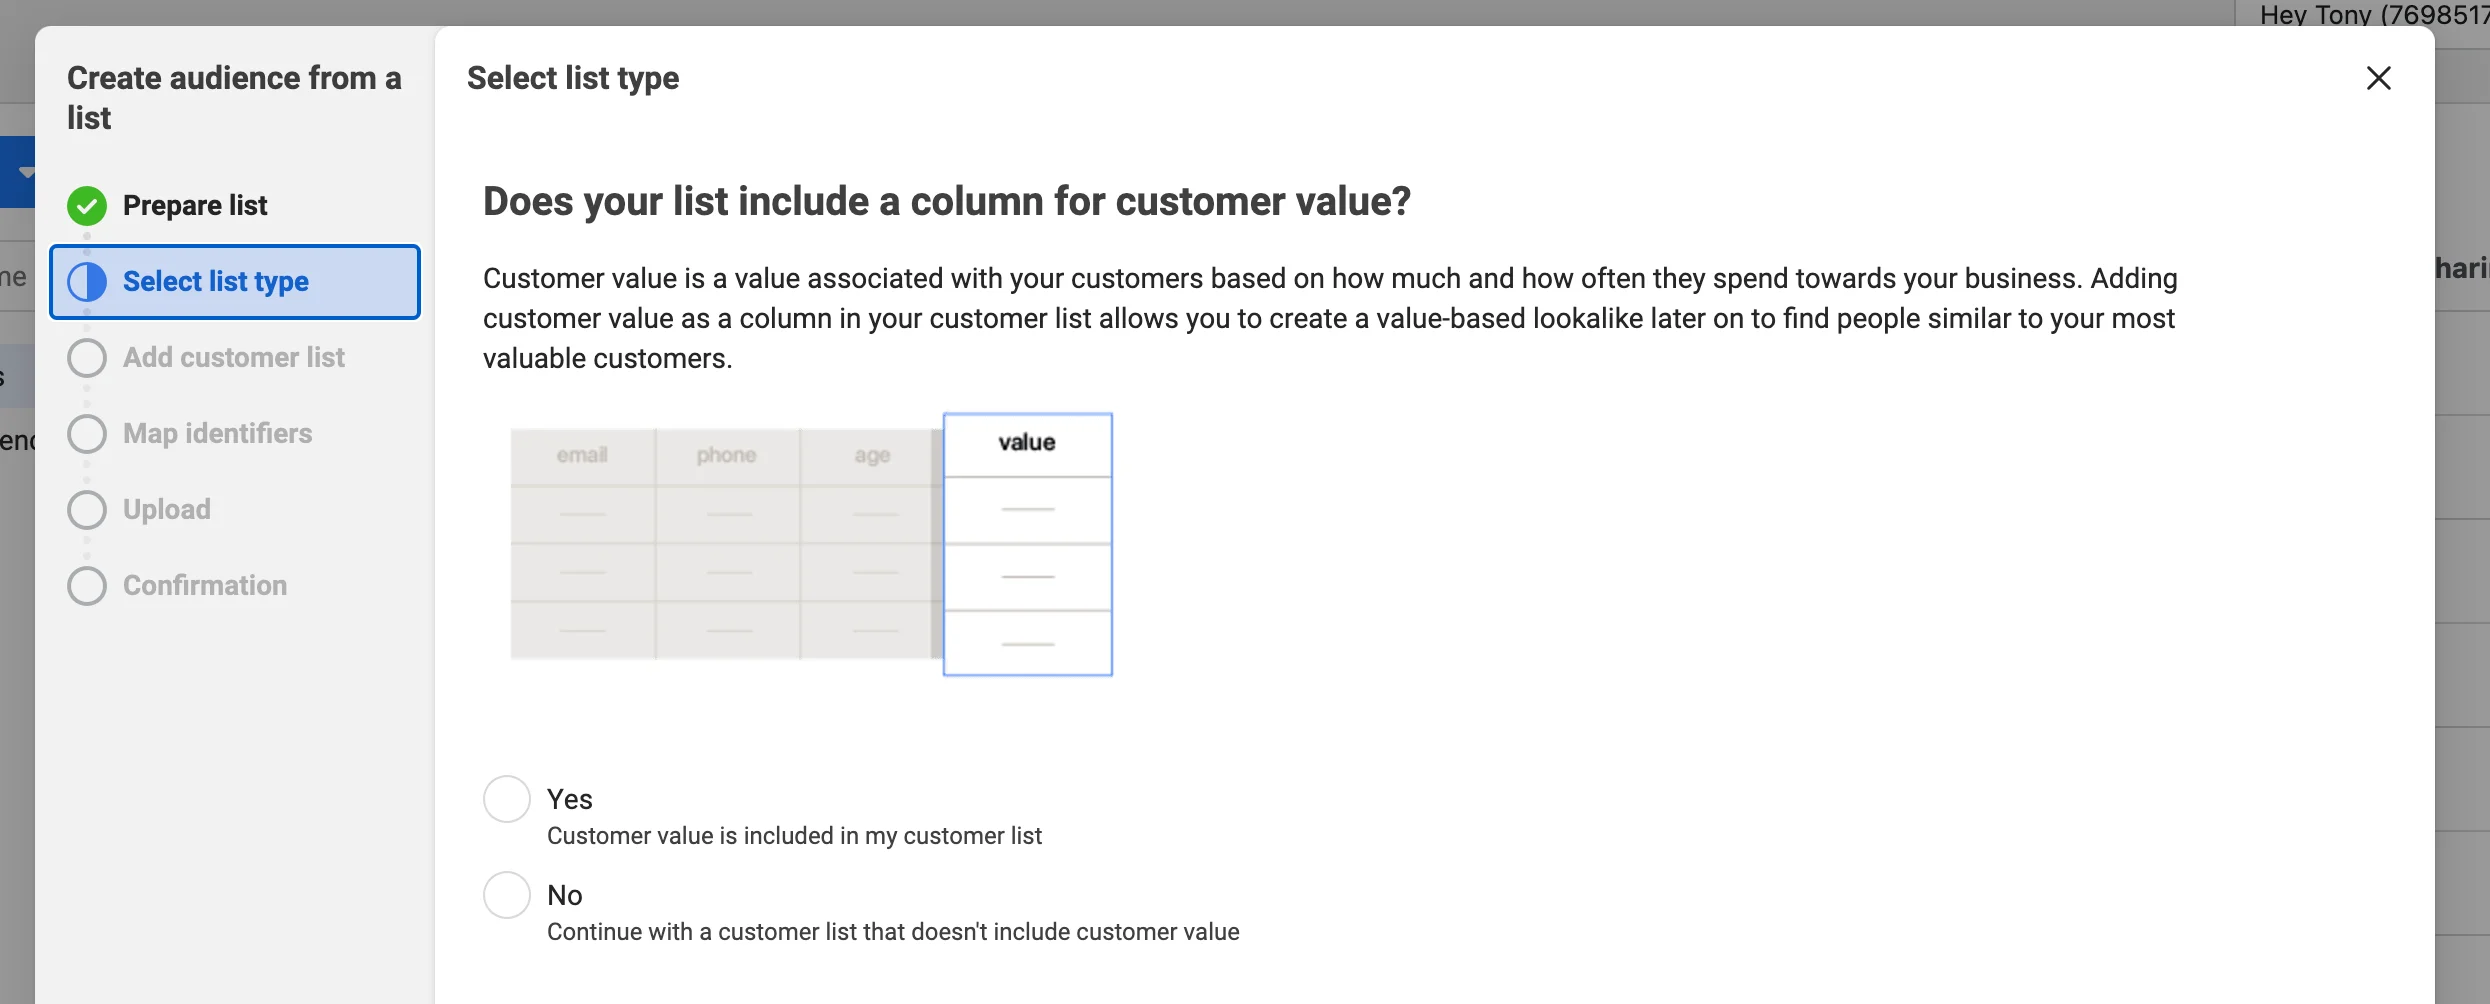 custom value from customer list